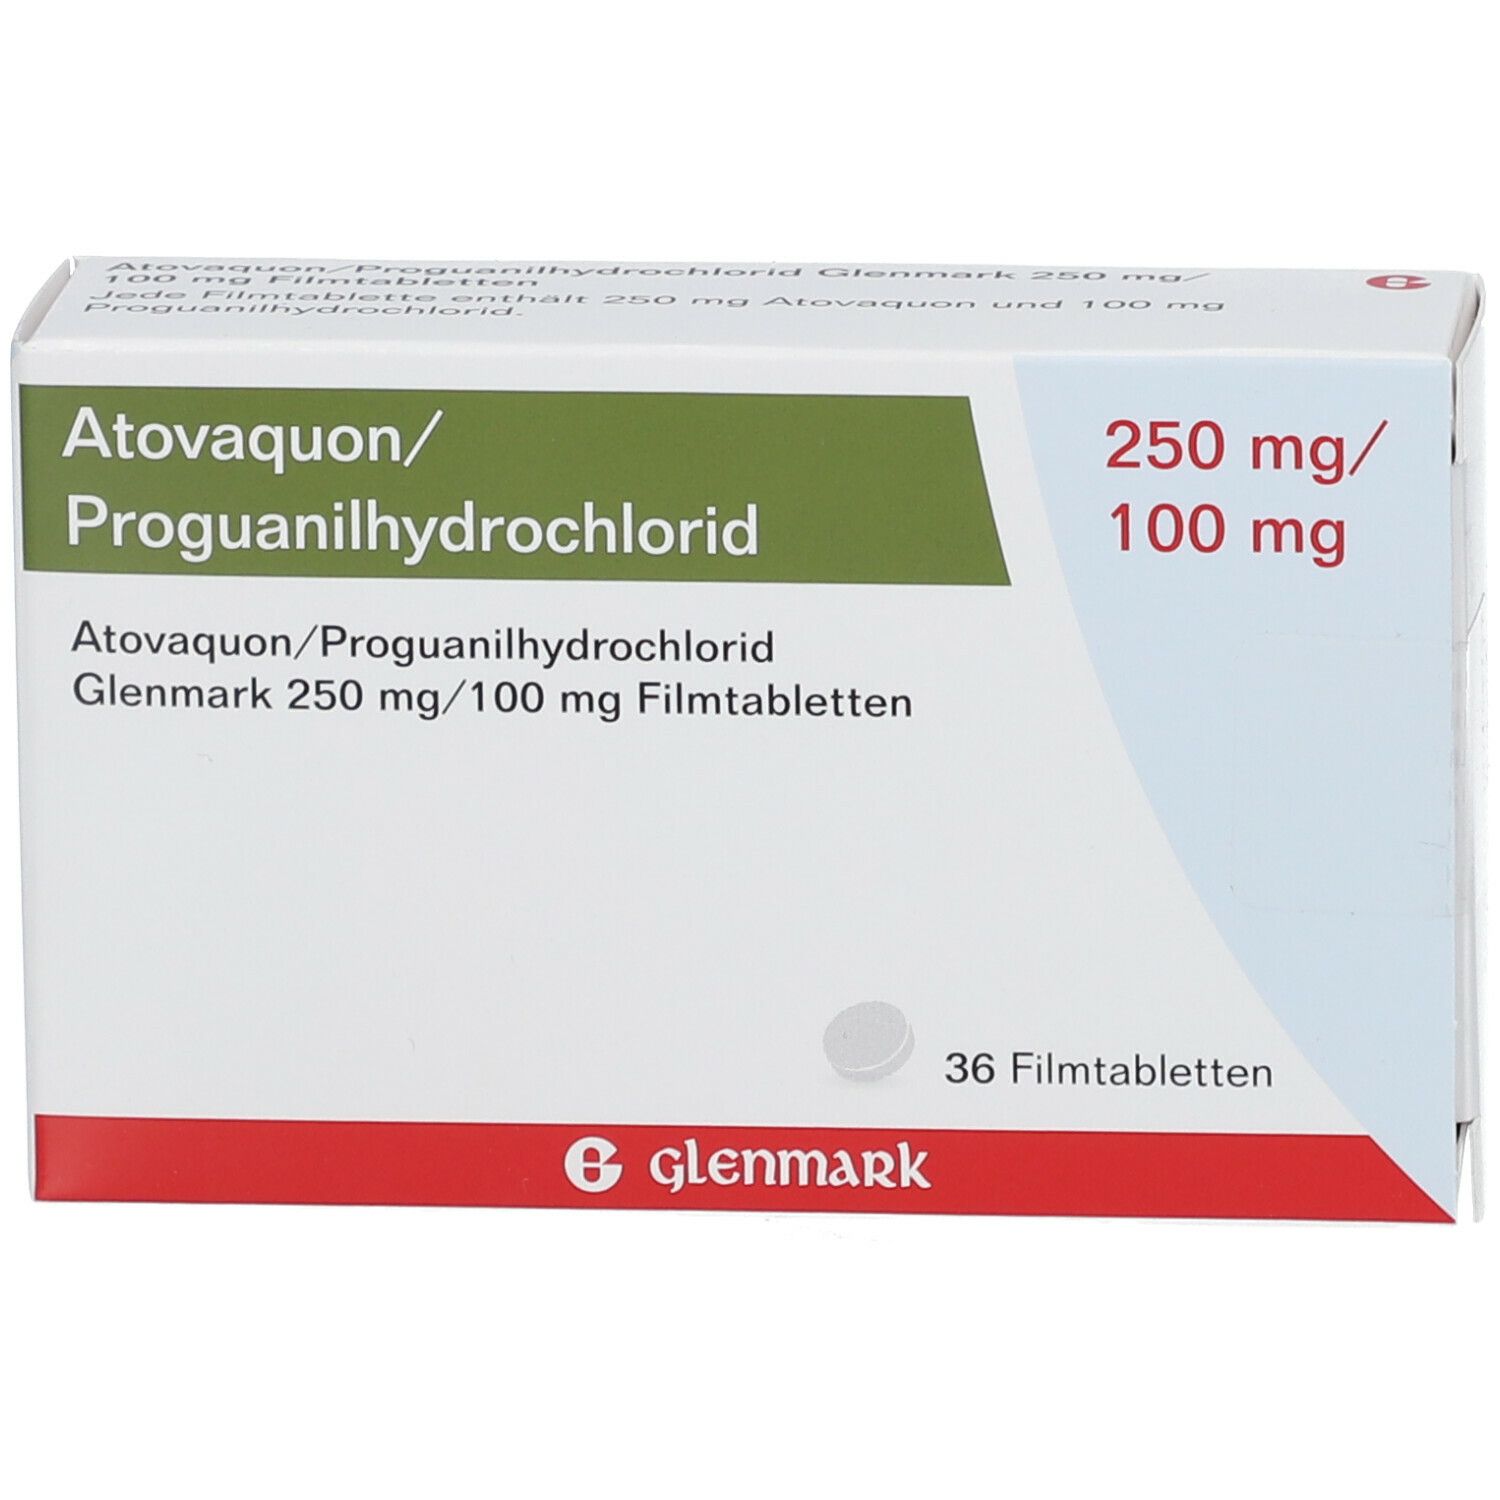 Atovaquon/Proguanilhydrochlorid Glenmark 250 mg/100 mg